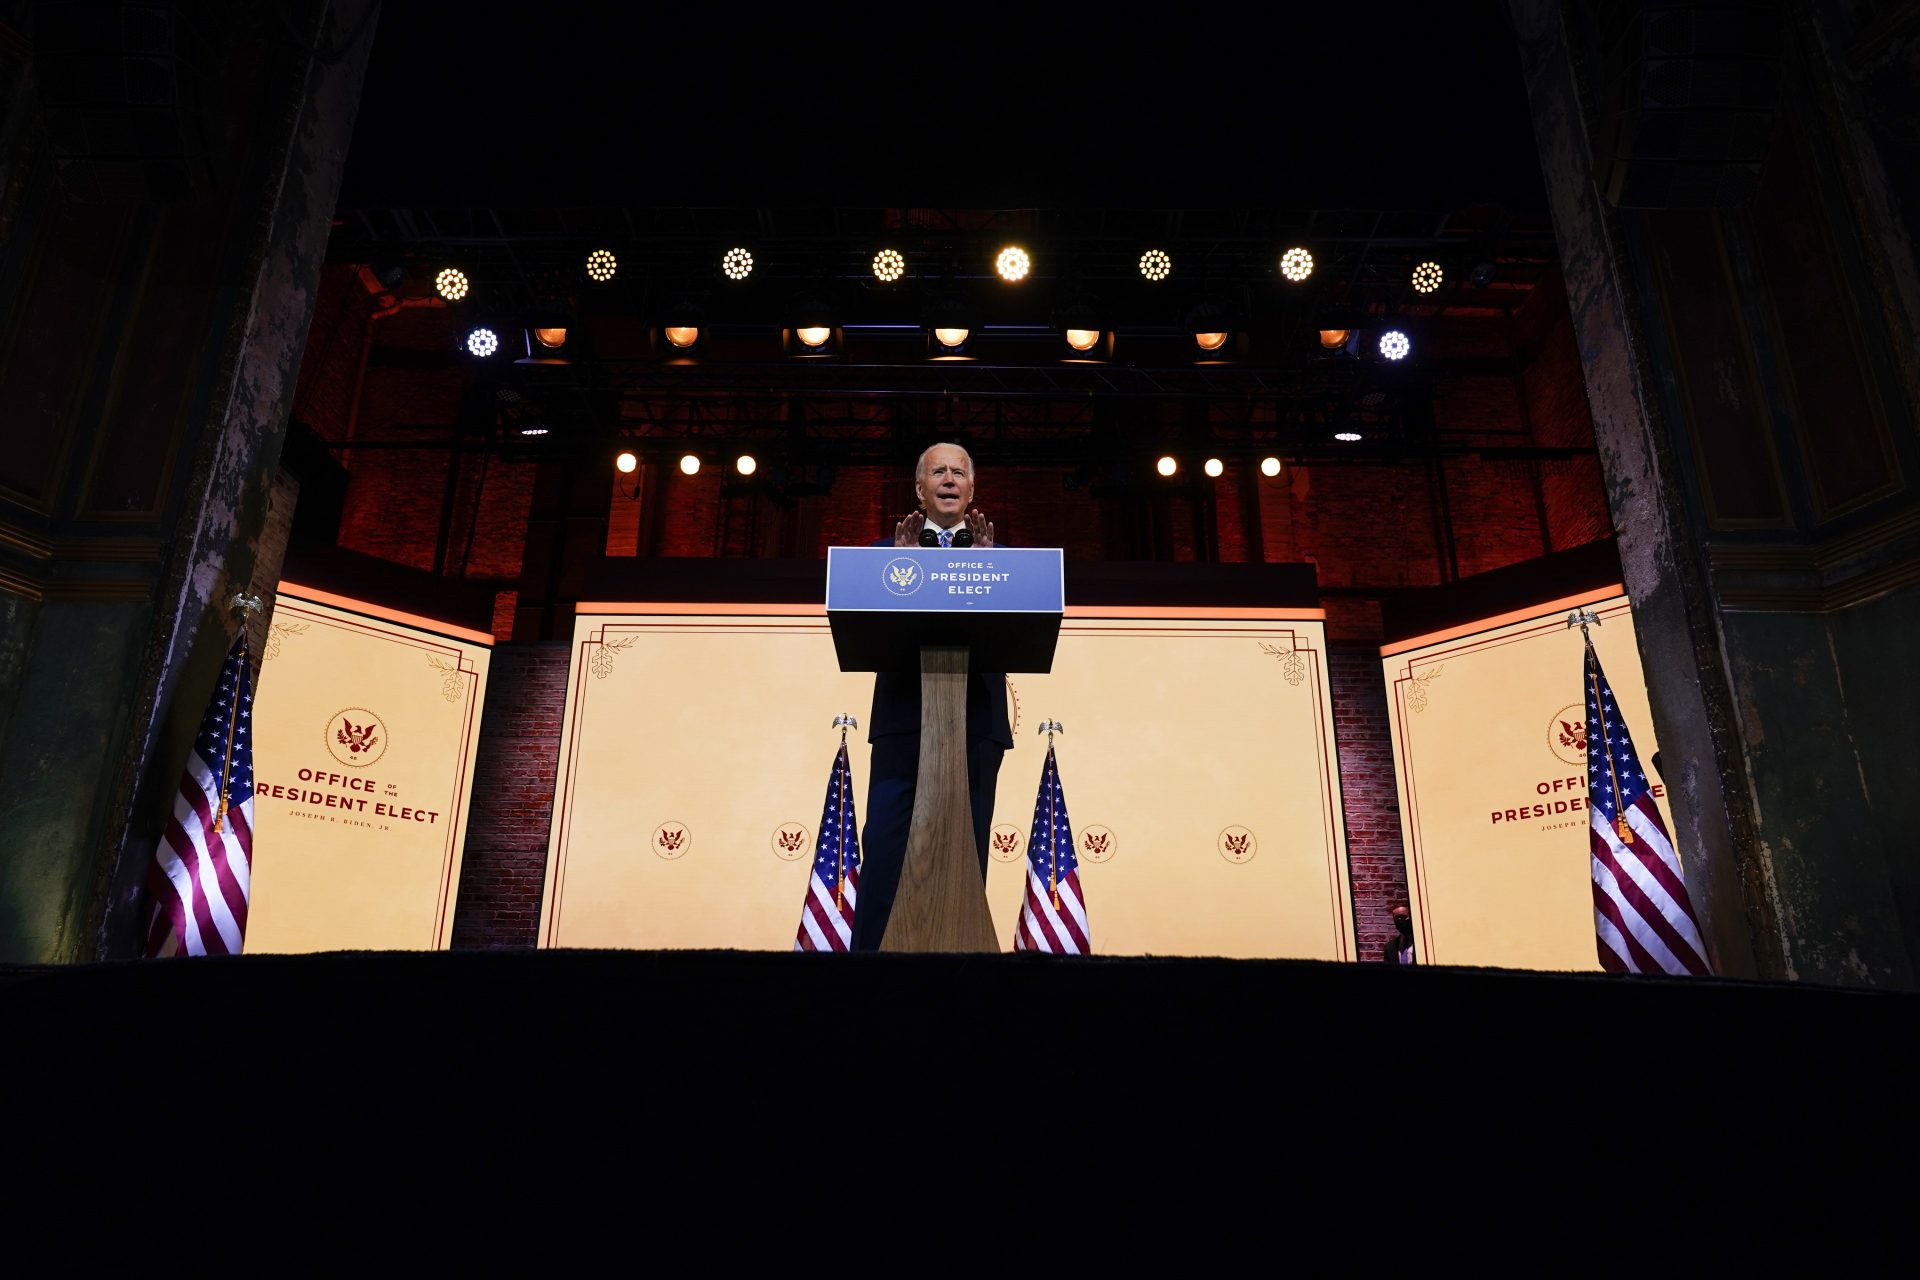 President-elect Joe Biden speaks at The Queen theater Wednesday, Nov. 25, 2020, in Wilmington, Del.